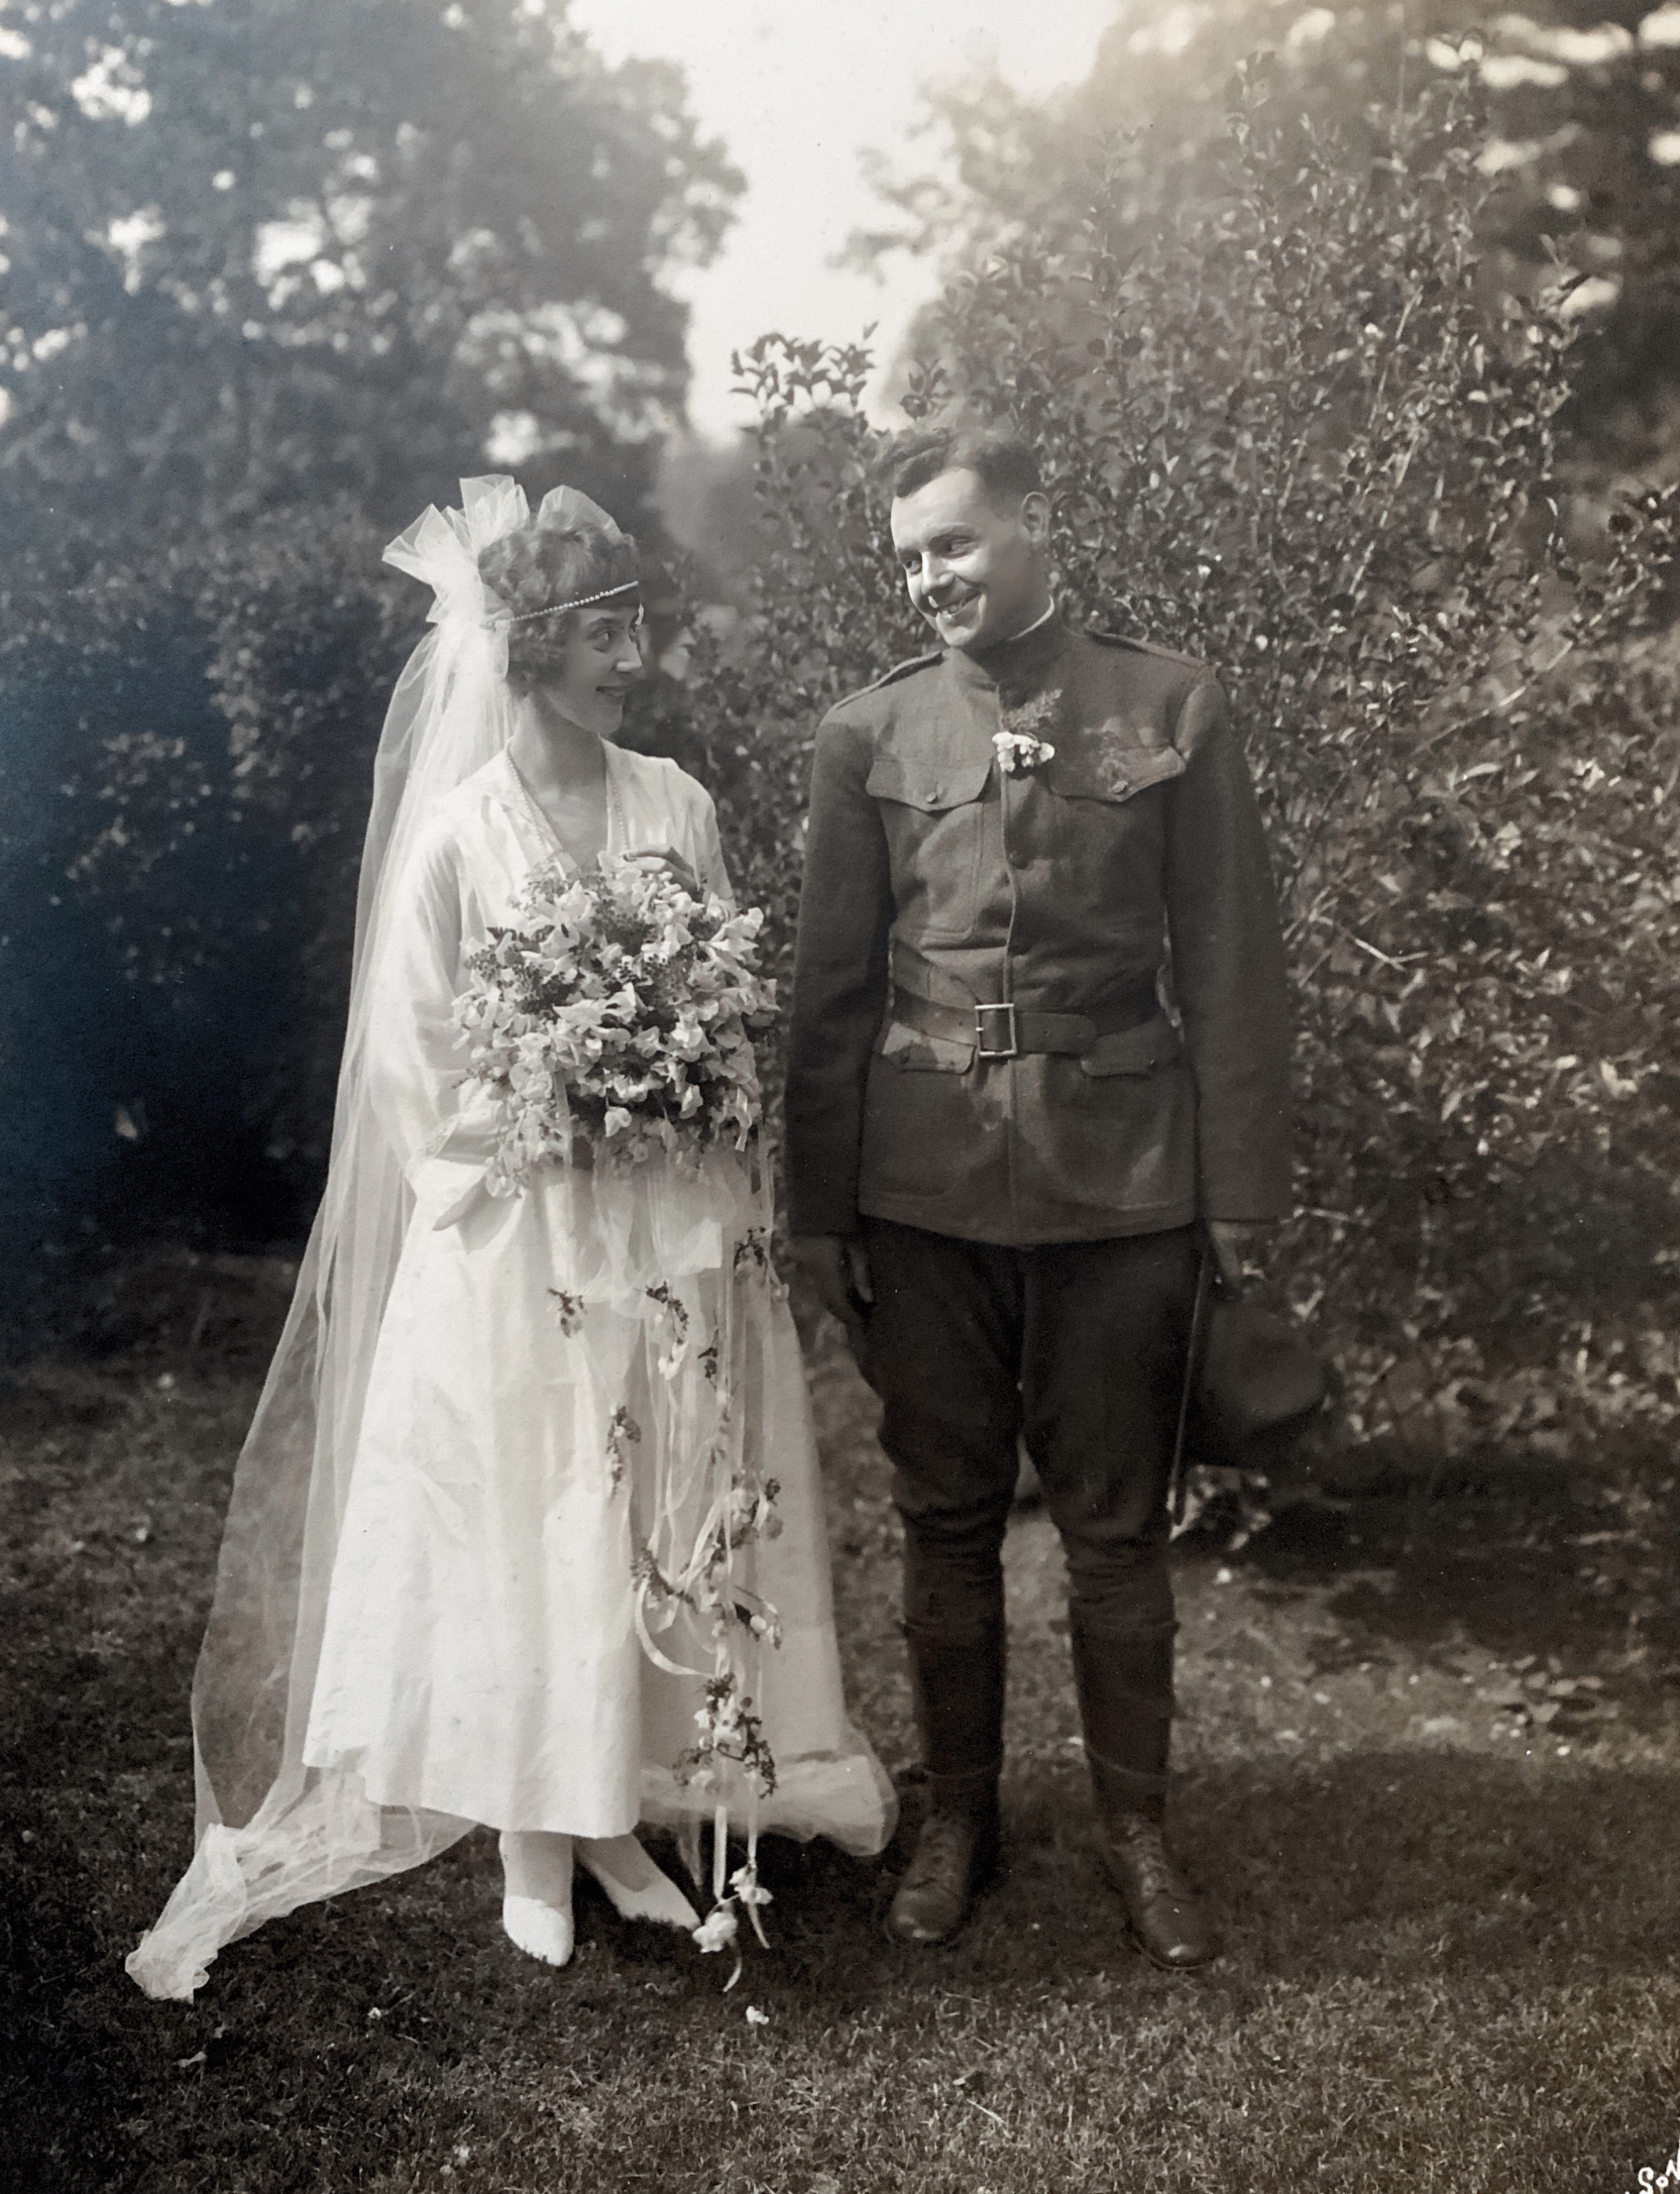 Gram & Homer’s Wedding Day June 14, 1917 16 Bartlett Street, Melrose